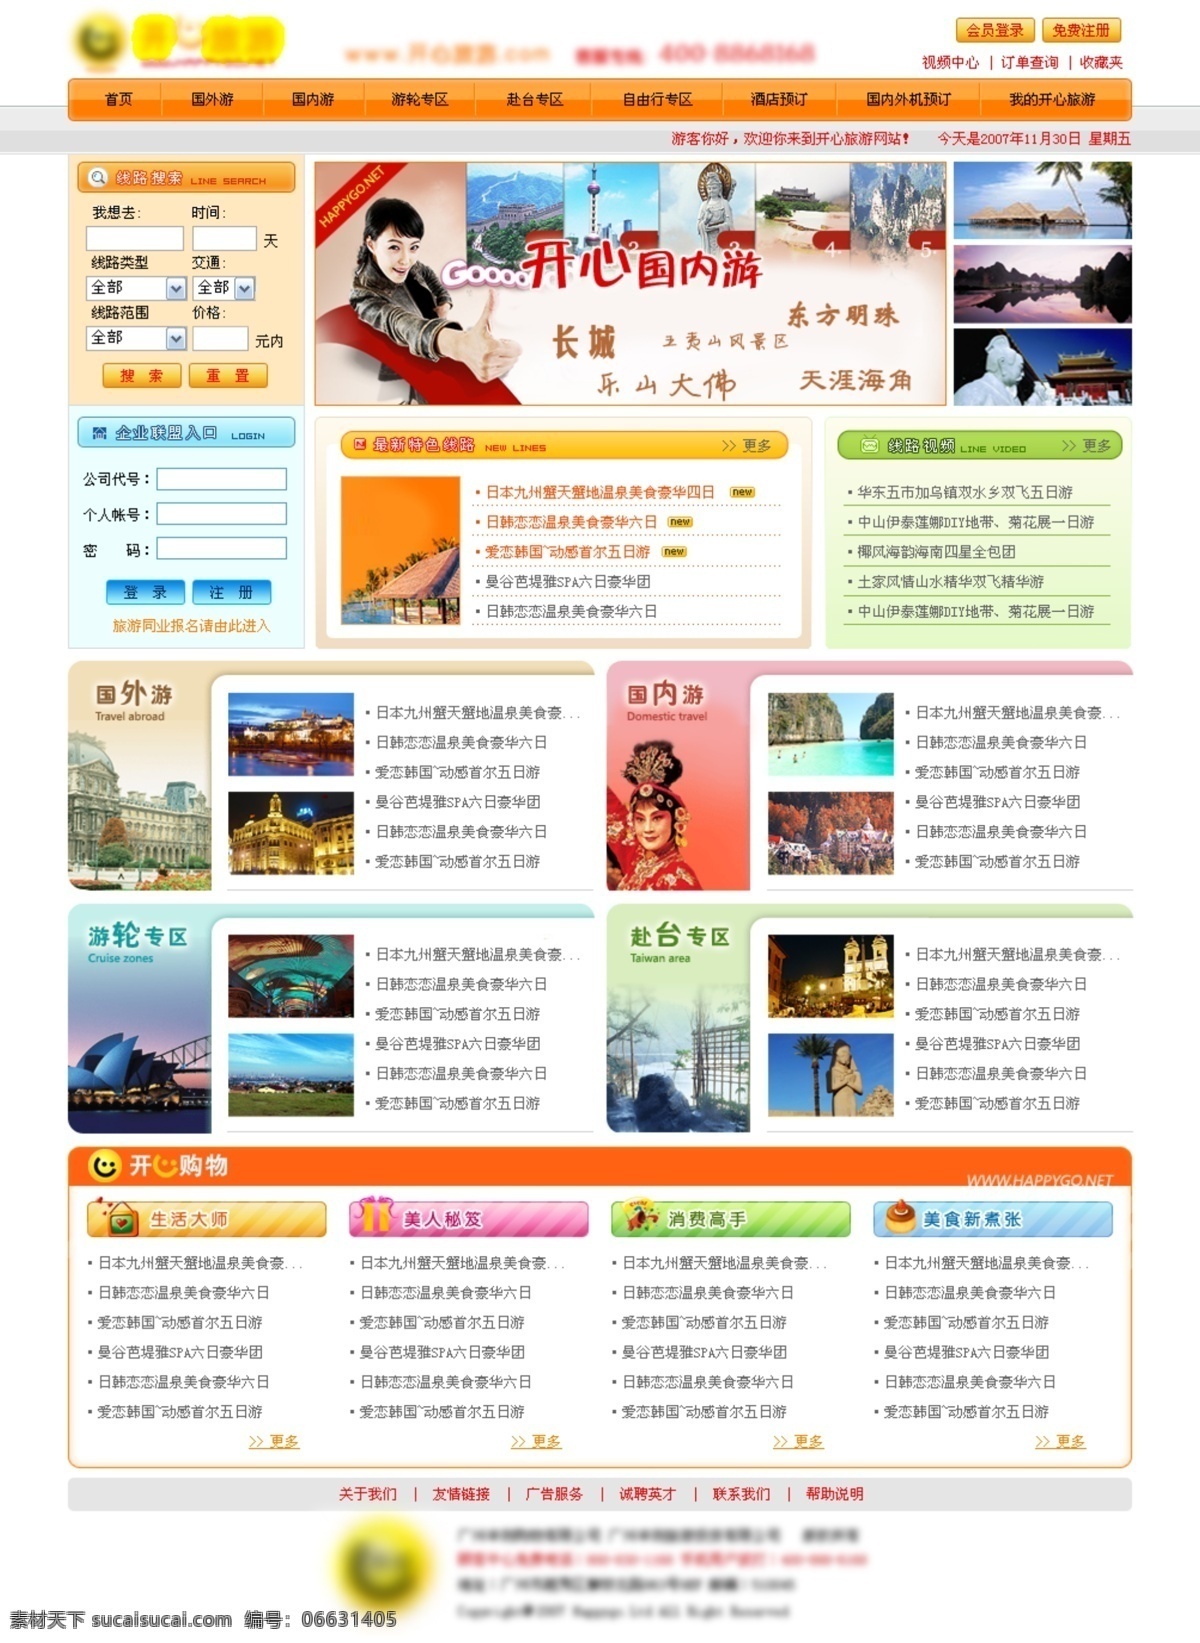 国际旅游 门户 网页模板 国际 旅游 网页素材